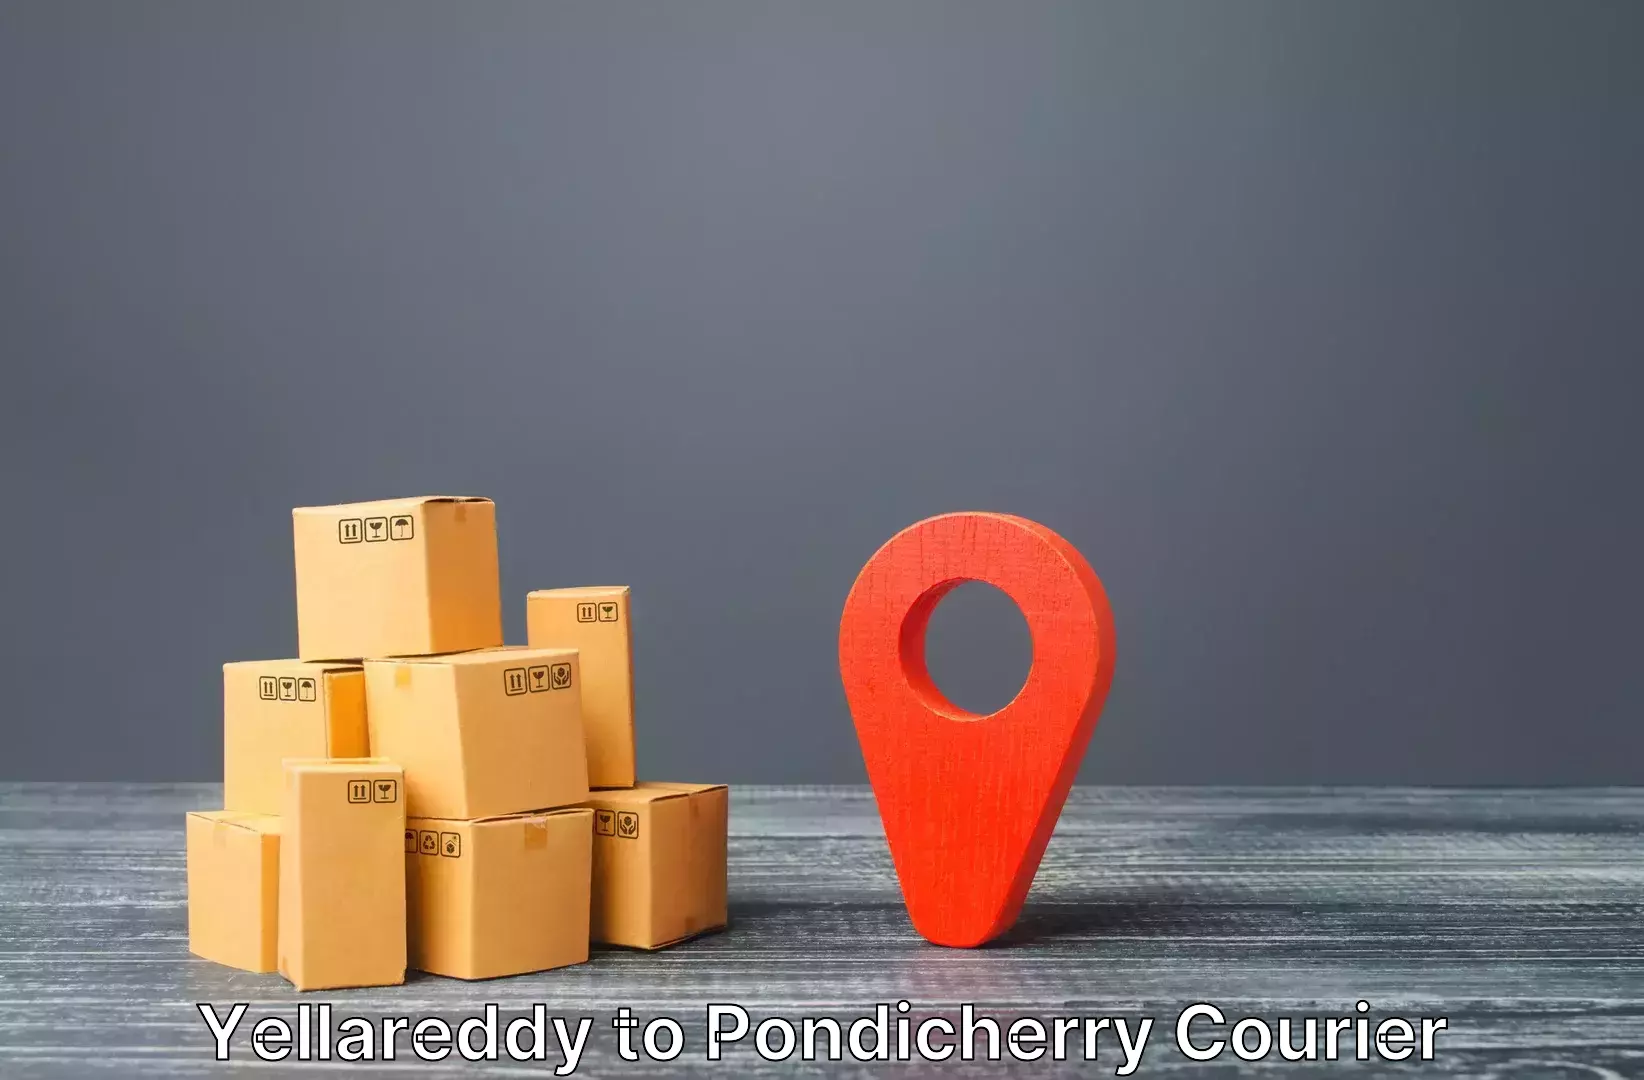 Luggage transit service Yellareddy to Pondicherry University